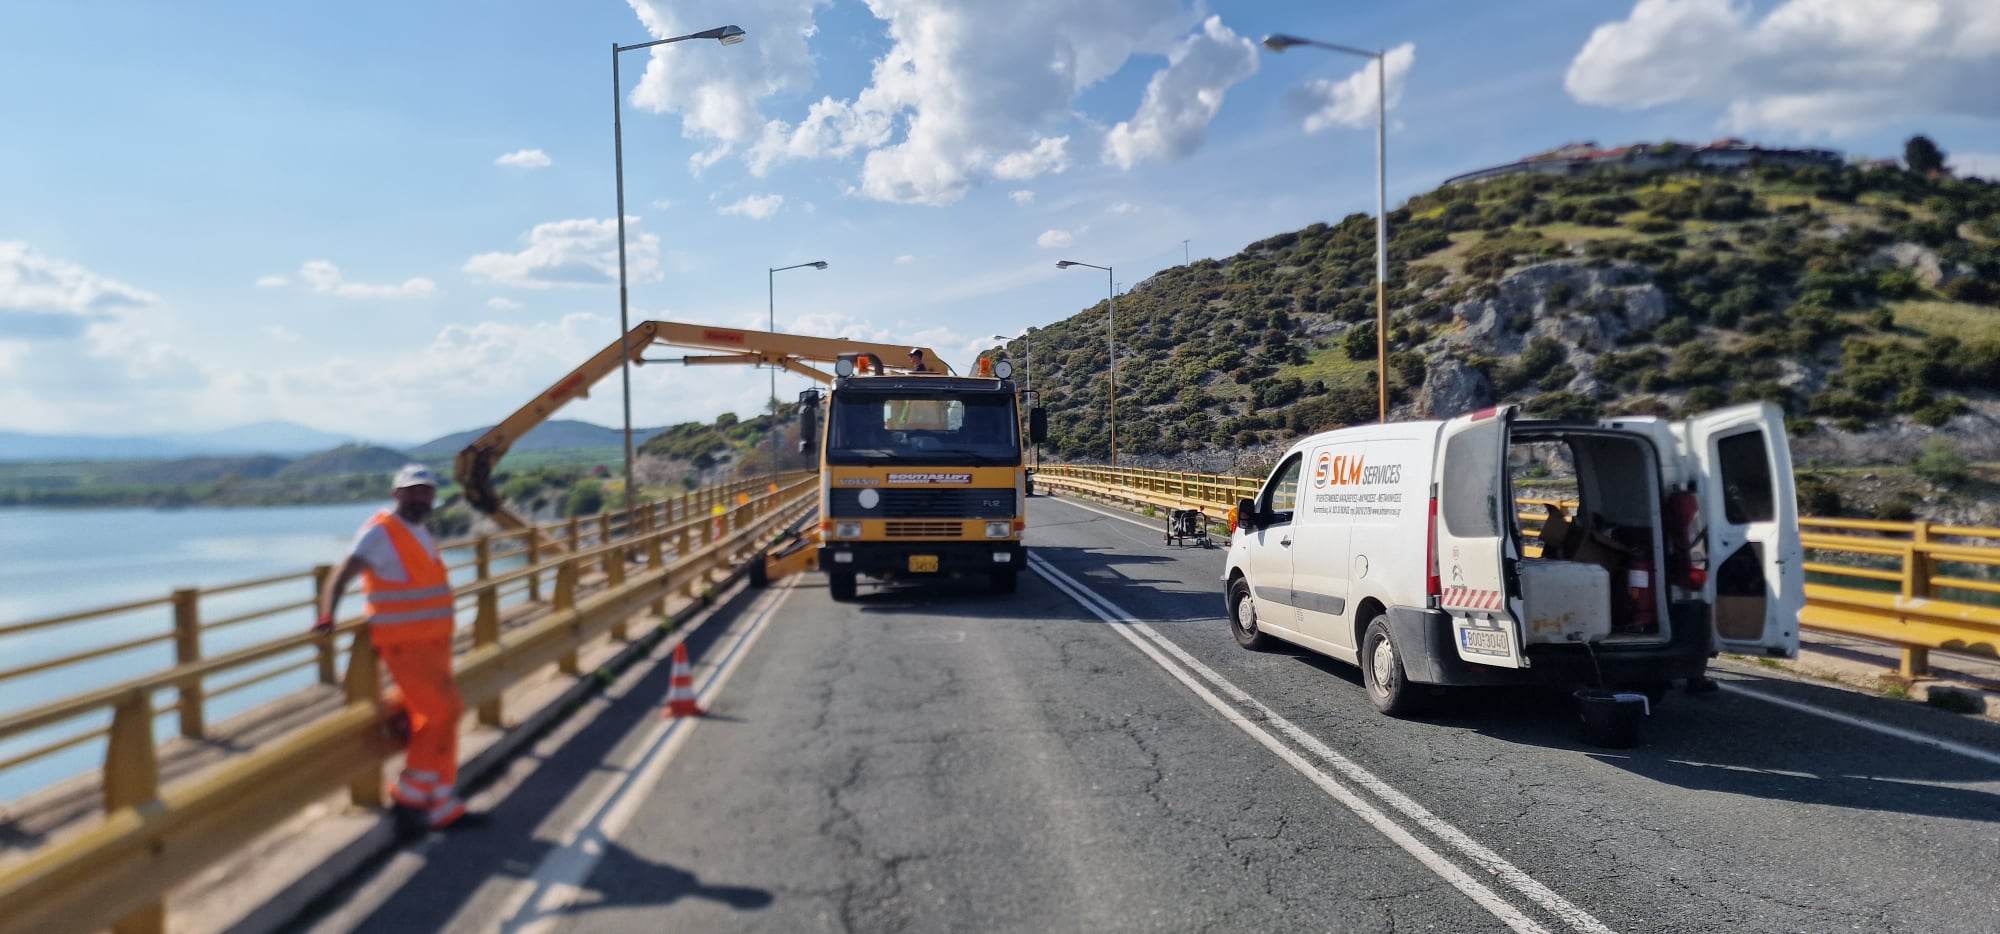 Ολοκληρώθηκε χωρίς προβλήματα η δεύτερη φάση εργασιών στην Υψηλή Γέφυρα Σερβίων -2-